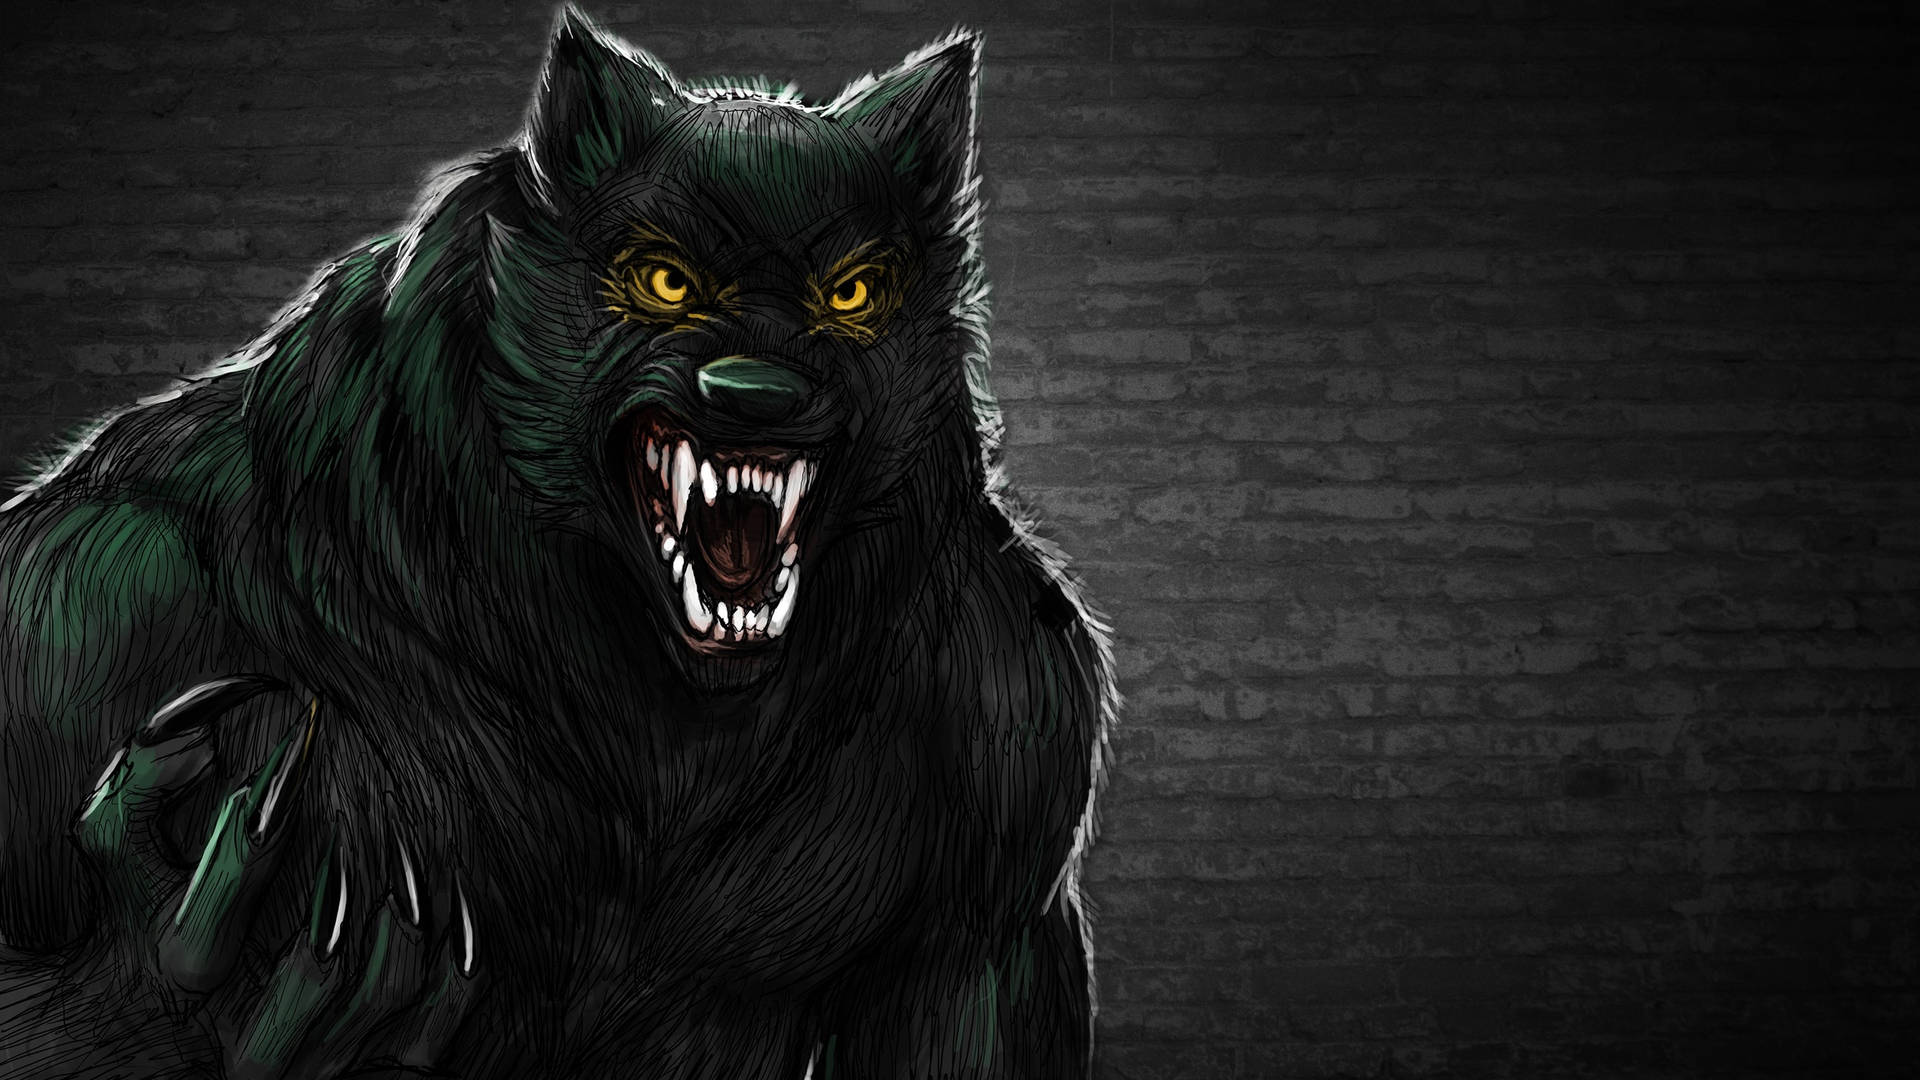 Dark Urban Werewolf Art